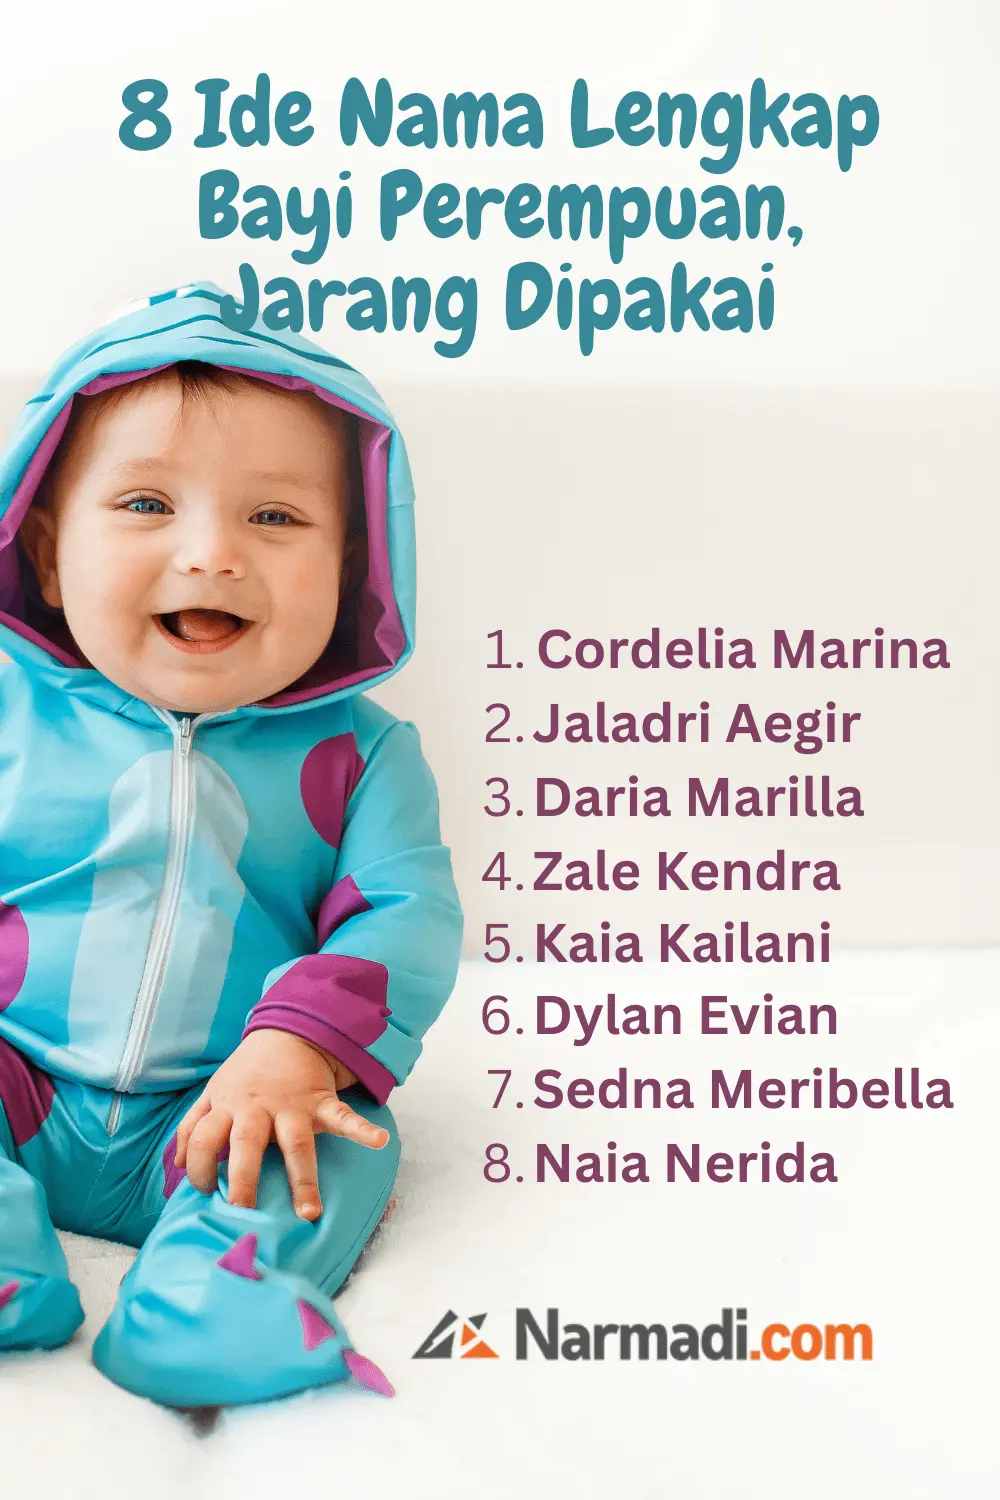 8 Ide Nama Lengkap Bayi Perempuan yang Jarang Dipakai